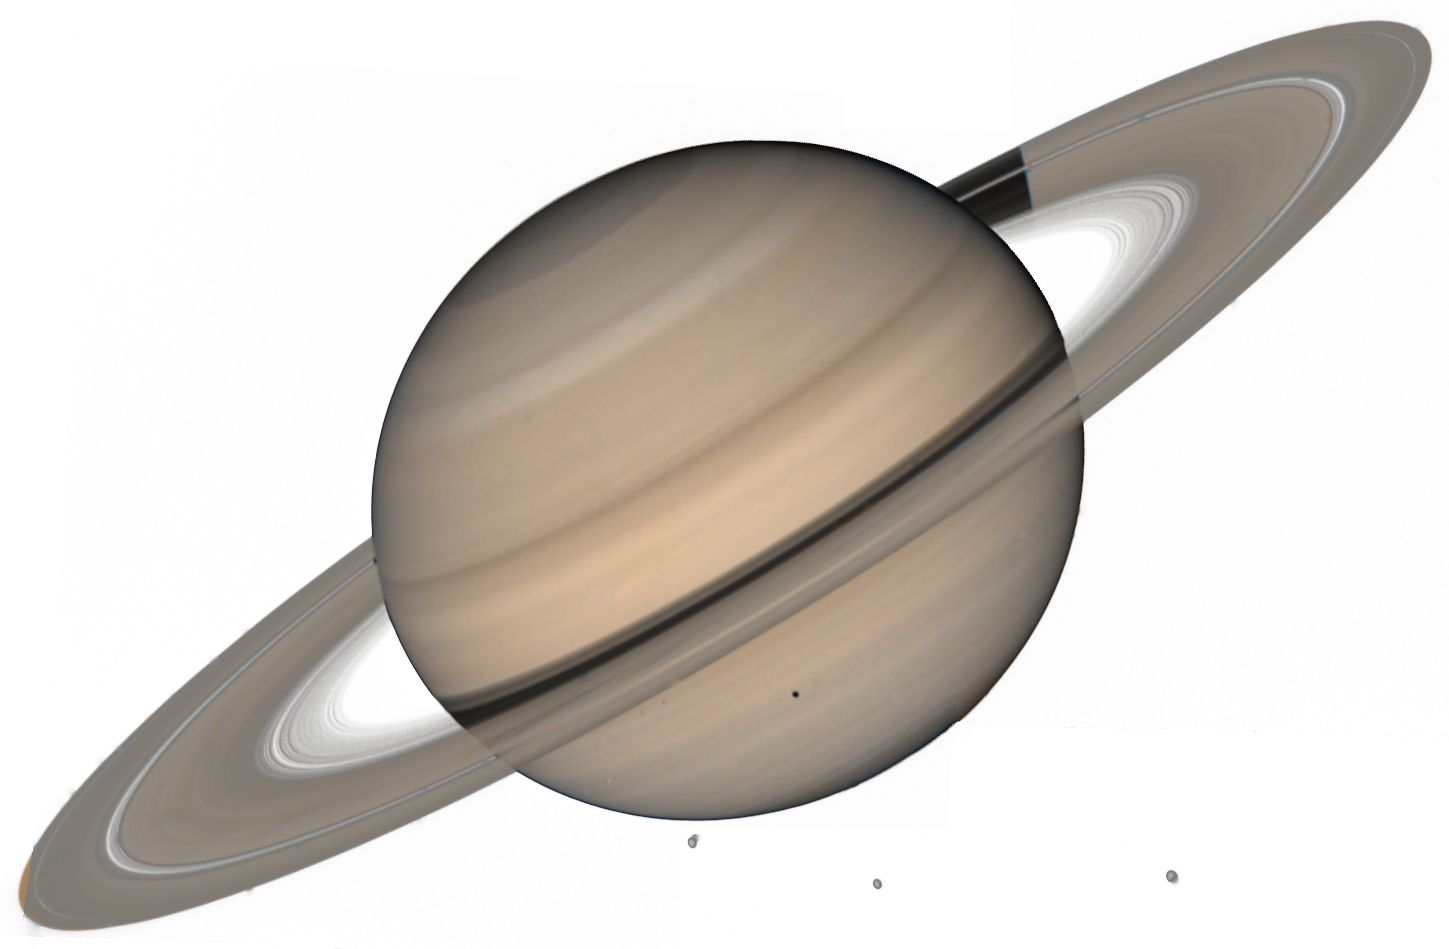 Saturn I SA-2 - Wikipedia